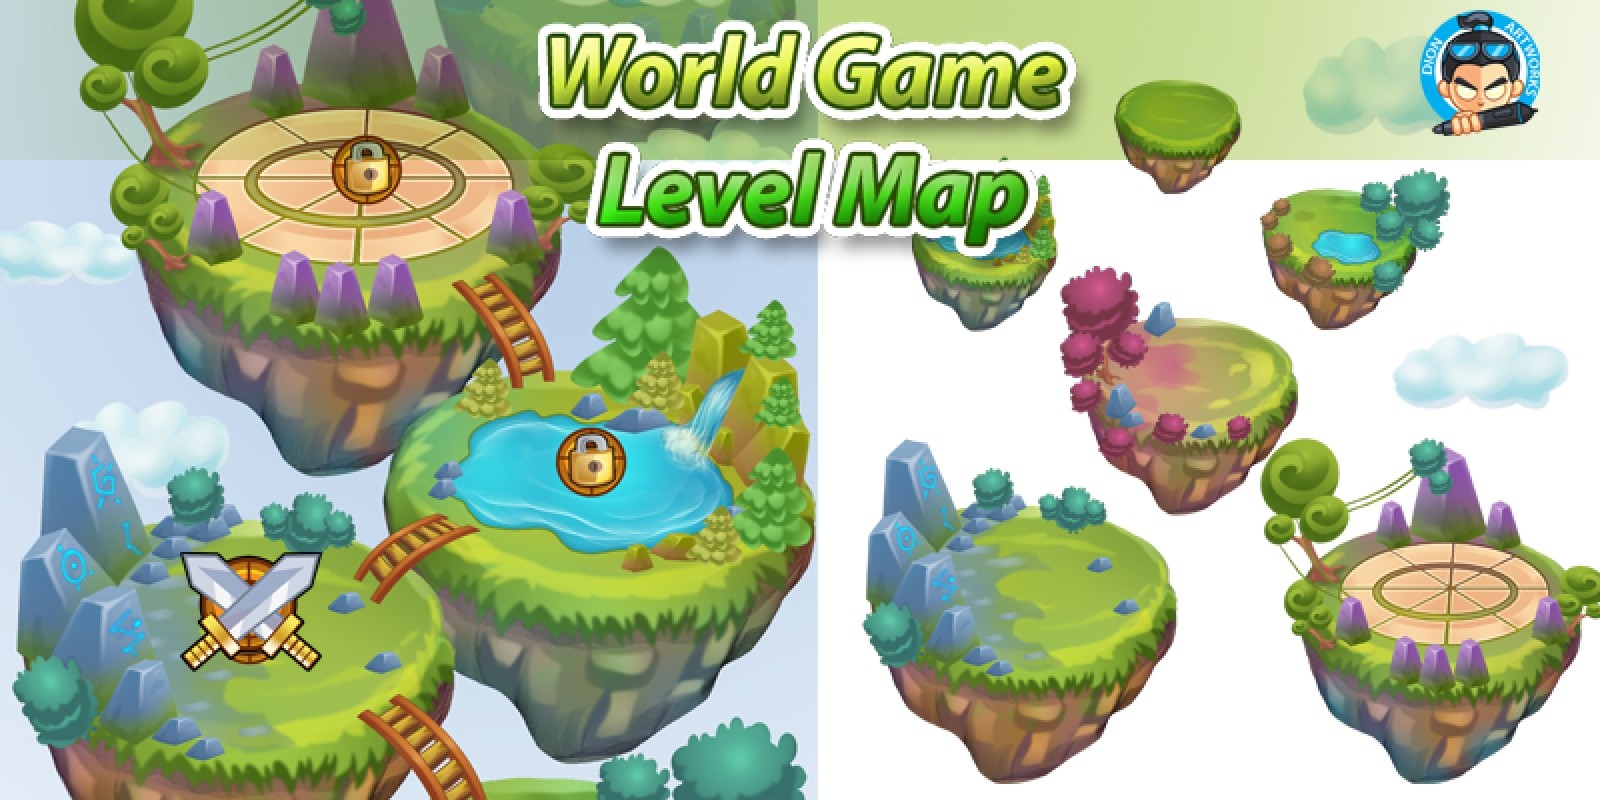 Уровень игры 218. Game Level Map. Левел в игре. Зеленый мир игра. Уровни в игре.